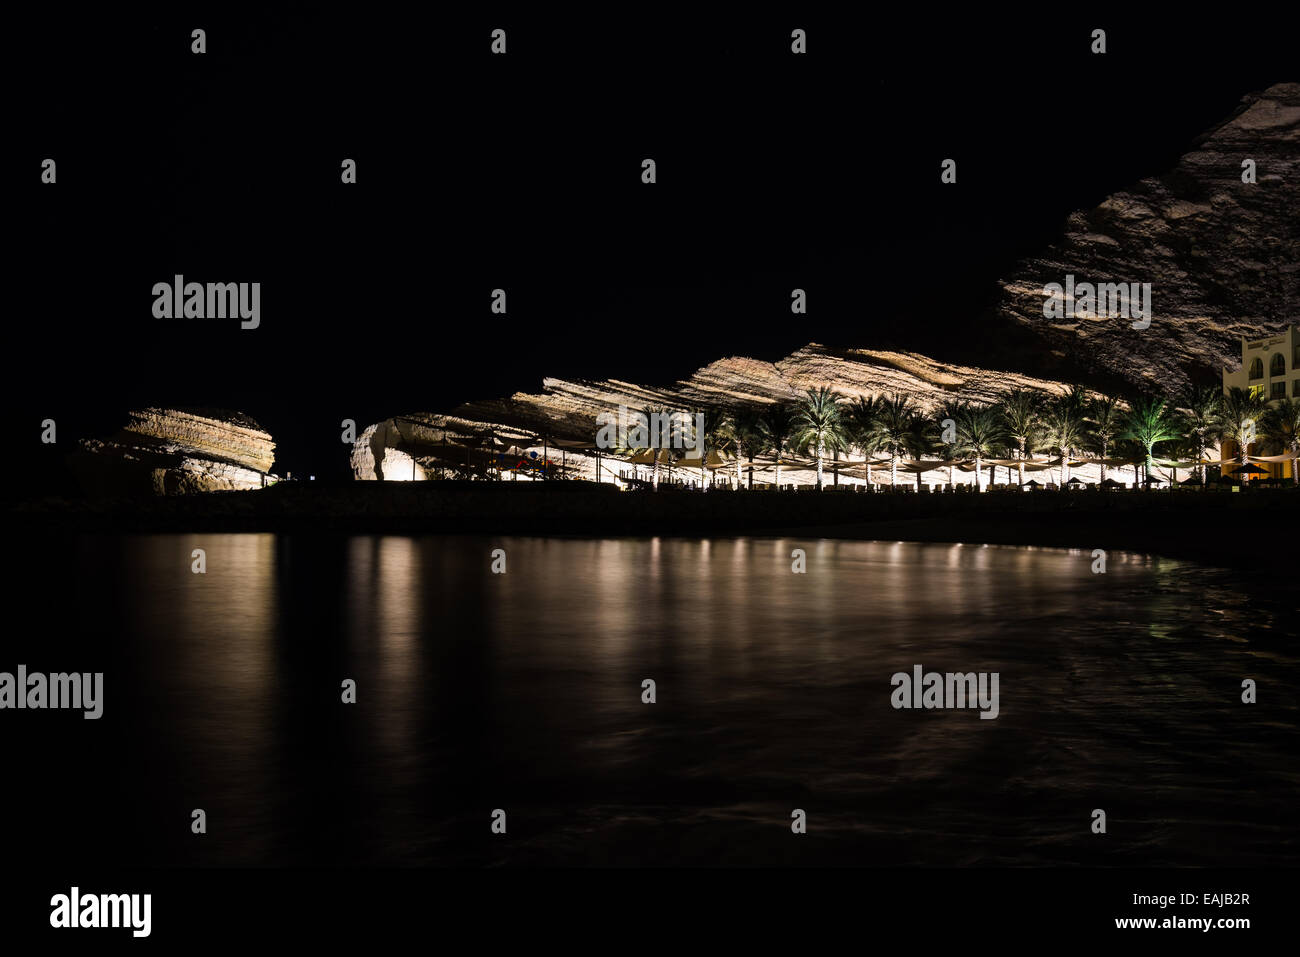 Kalksteinfelsen beleuchtet in der Nacht in einem Luxus-Resort vom arabischen Meer. Oman. Stockfoto